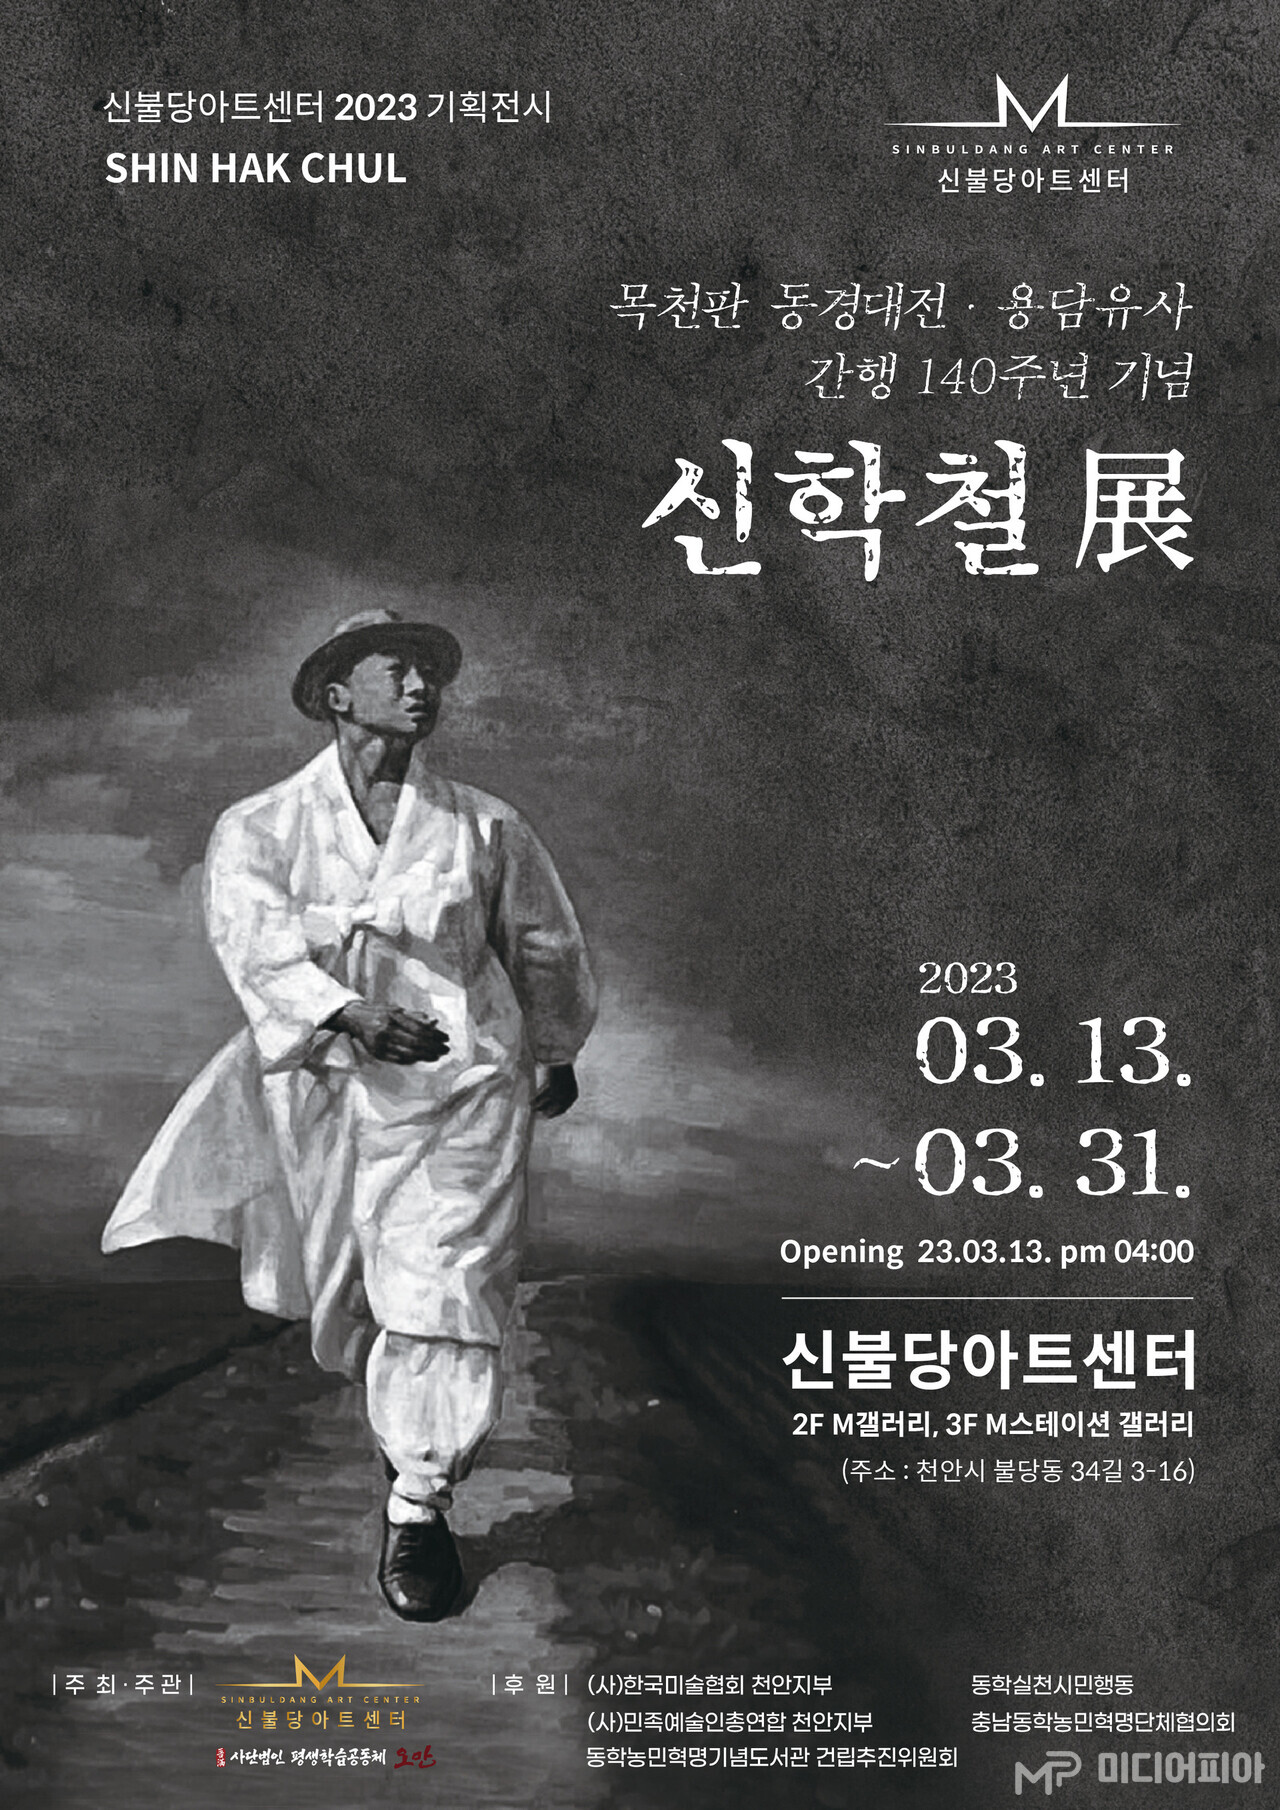 ‘신학철展' 안내 포스터. 